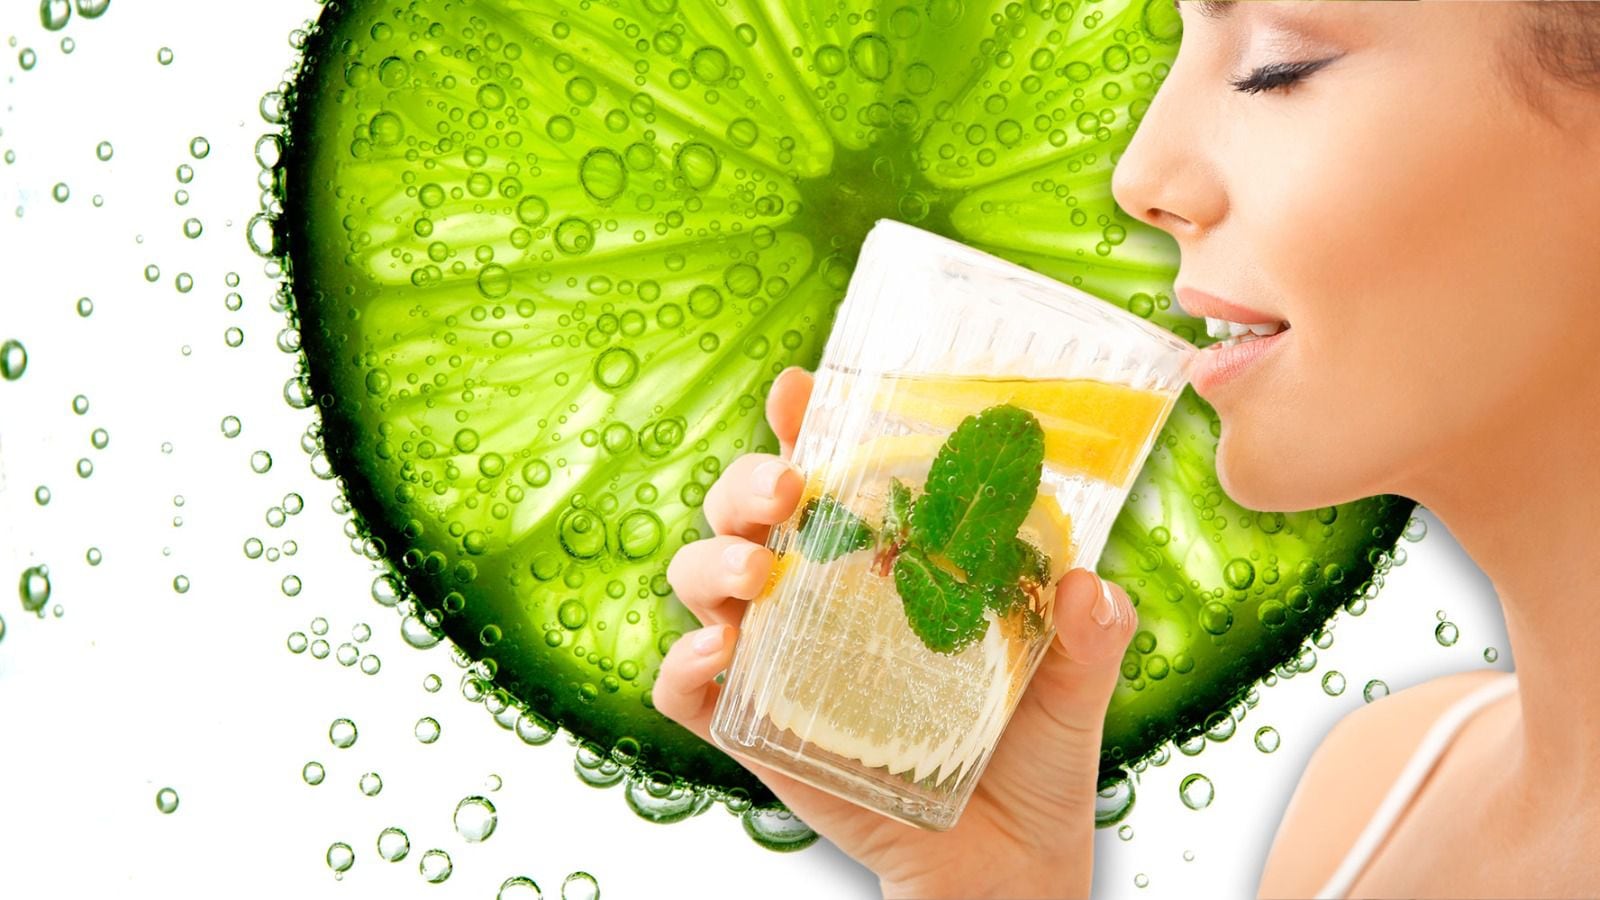 El agua mineral con limón podría promover la ingesta de líquidos saludables. (Foto: Especial / El Financiero).